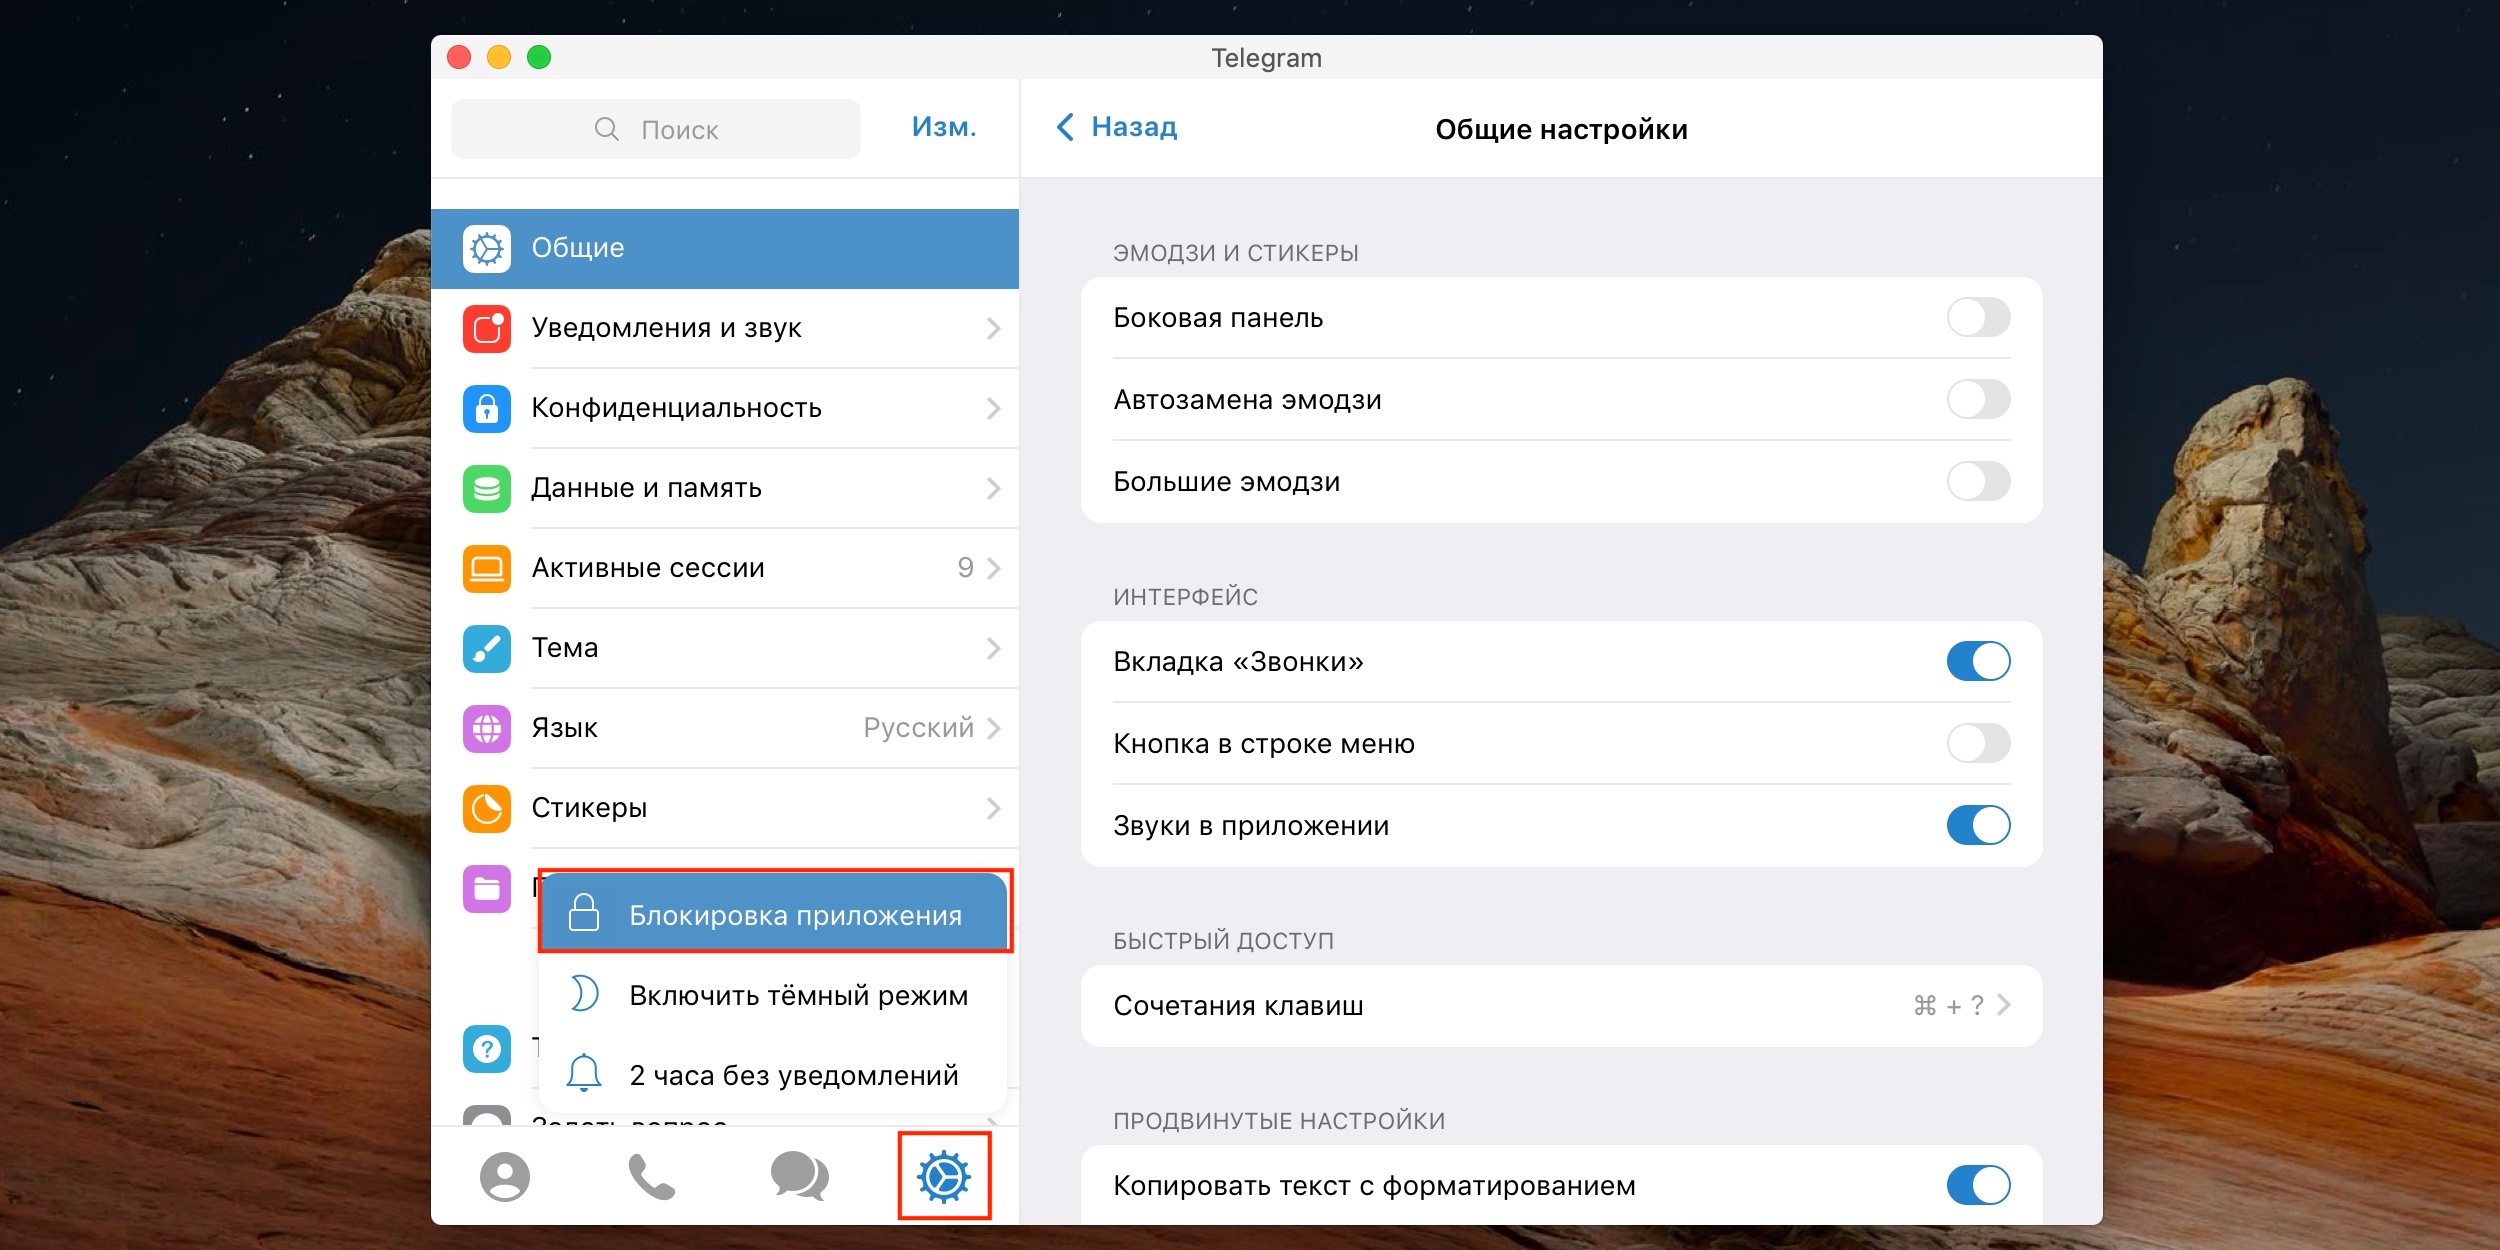 Как сделать телеграмм на русском языке на компе фото 77